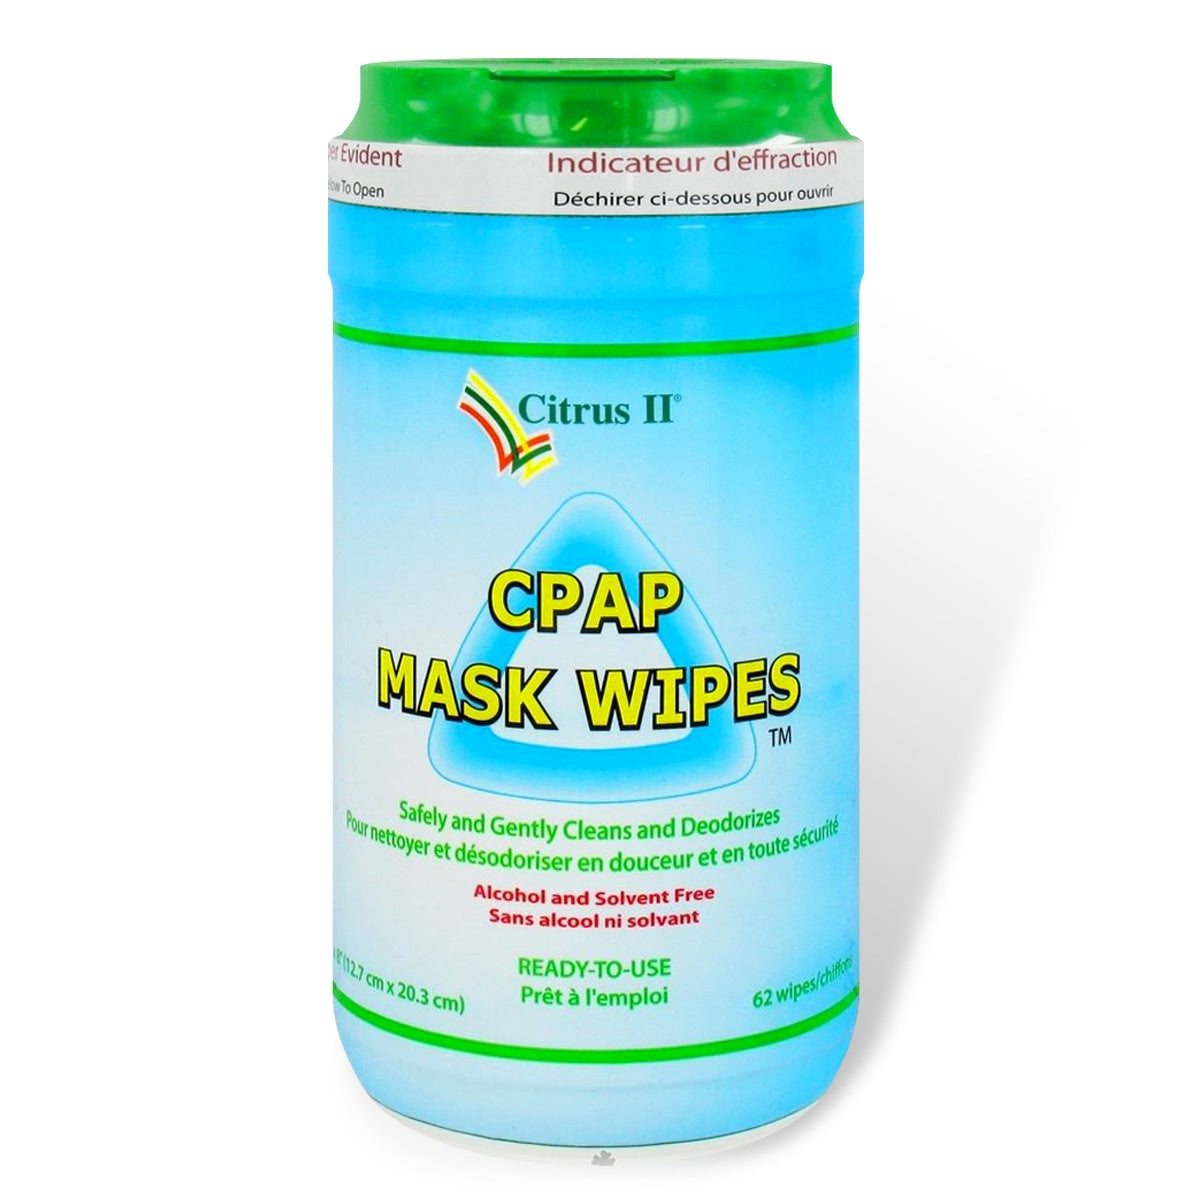 CPAP WIPES